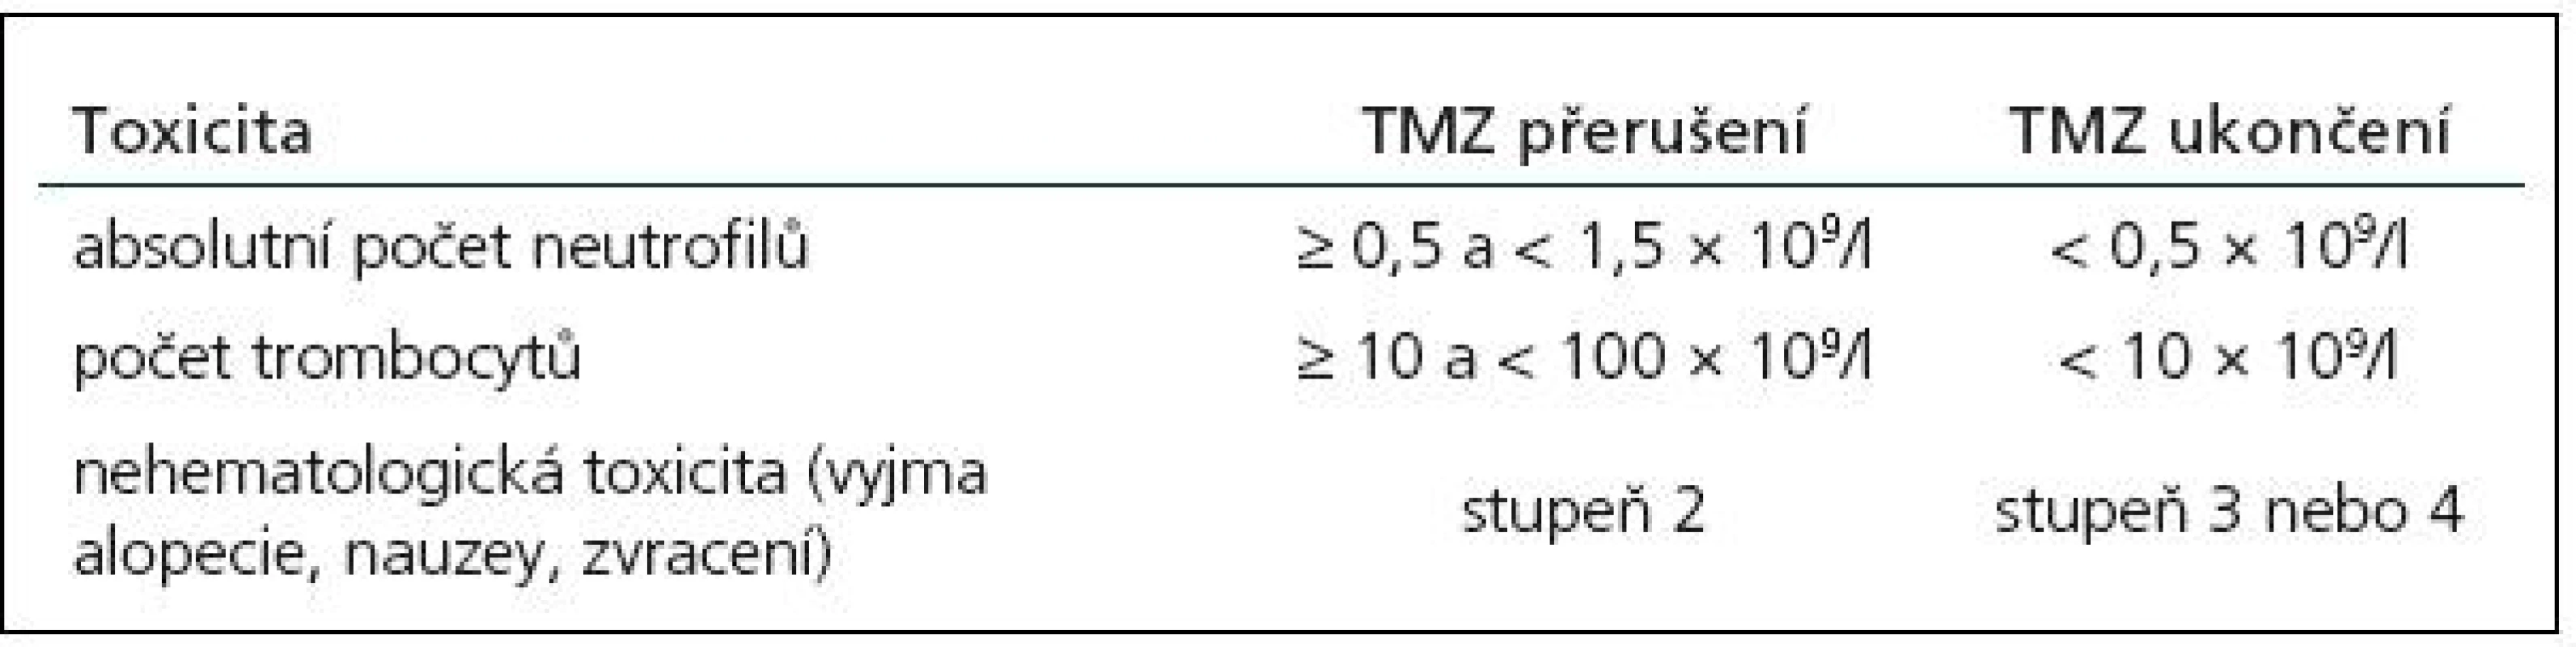 Přerušení nebo ukončení podávání temozolomidu (TMZ) během souběžné léčby s radioterapií [dle SPC temozolomidu].